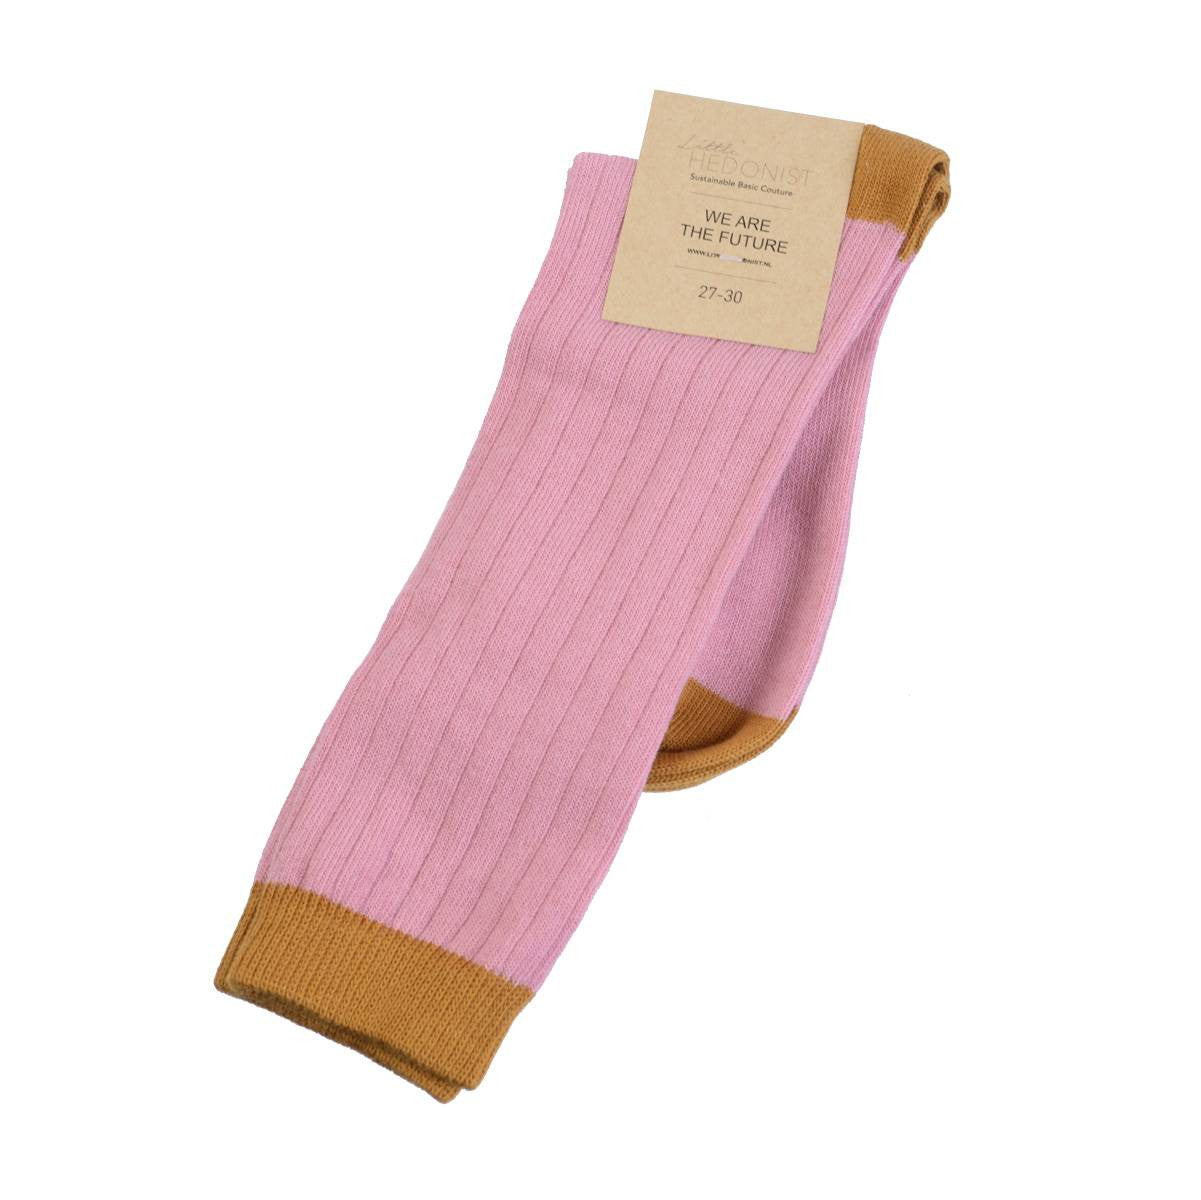 New old-fashion knitted knee socks to spice up your little one's style.